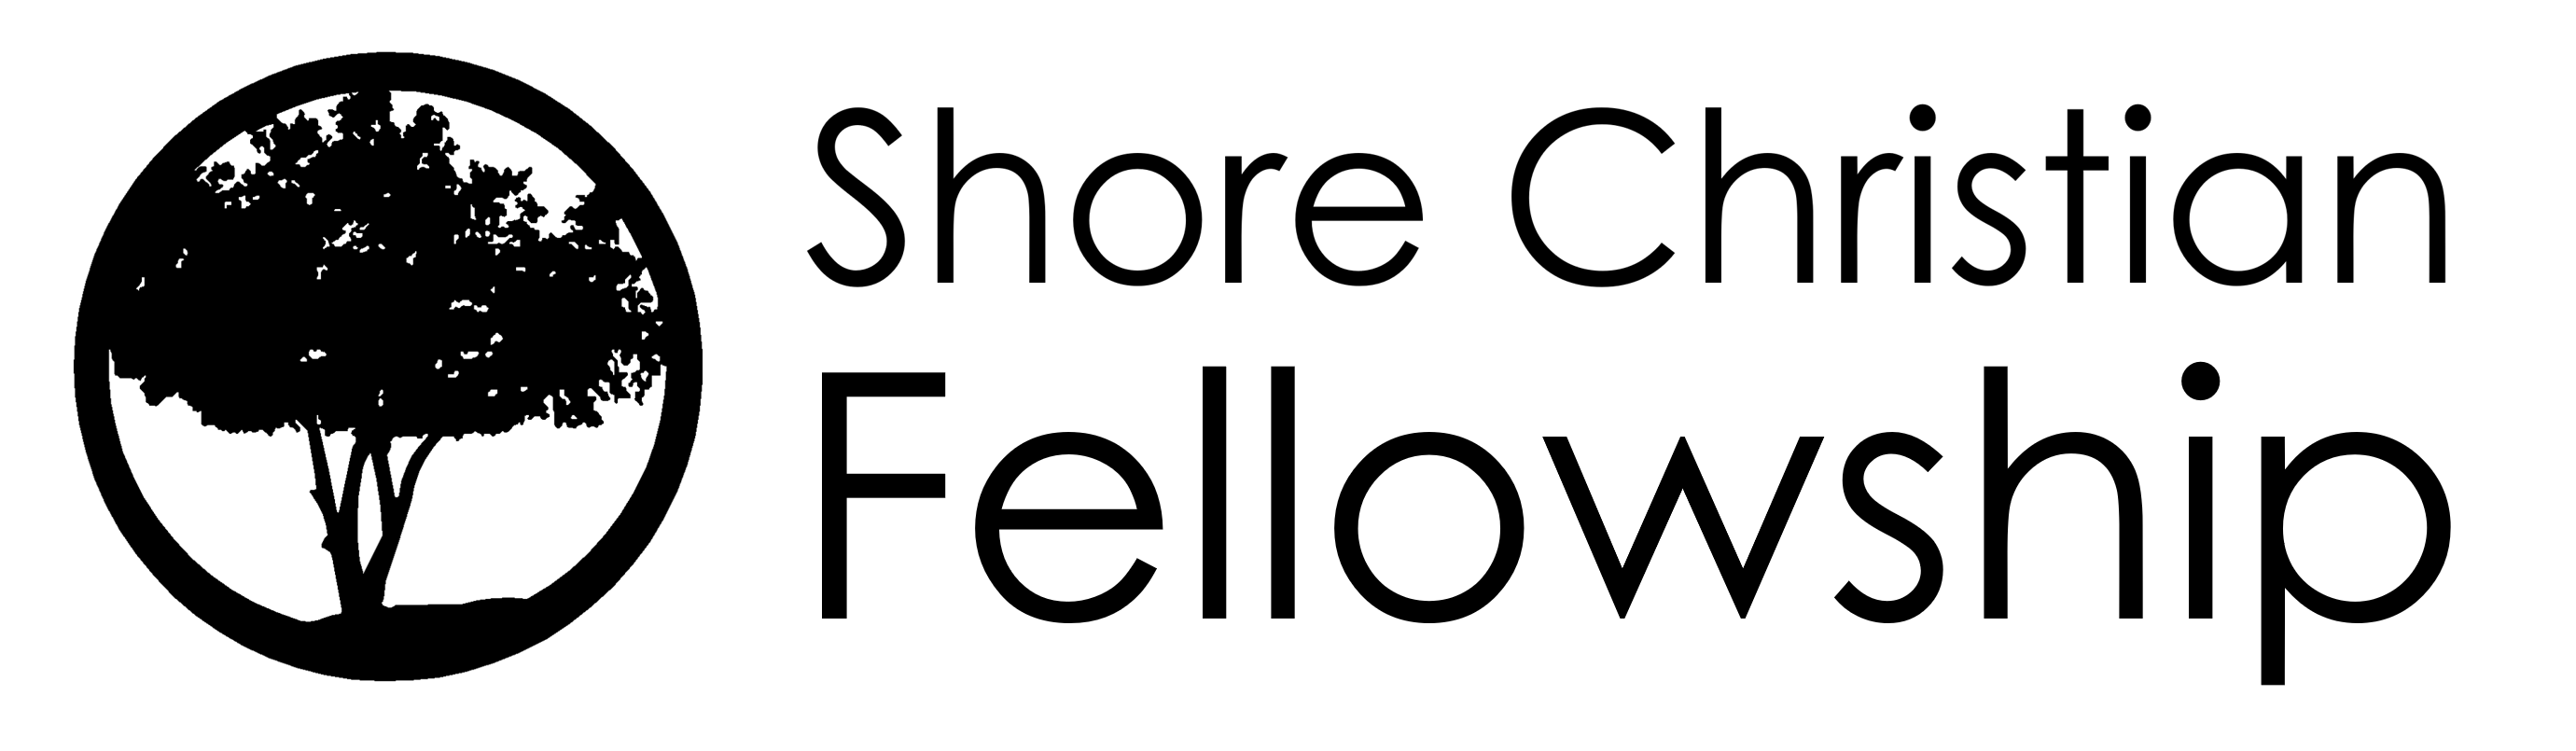 Shore Christian Fellowship